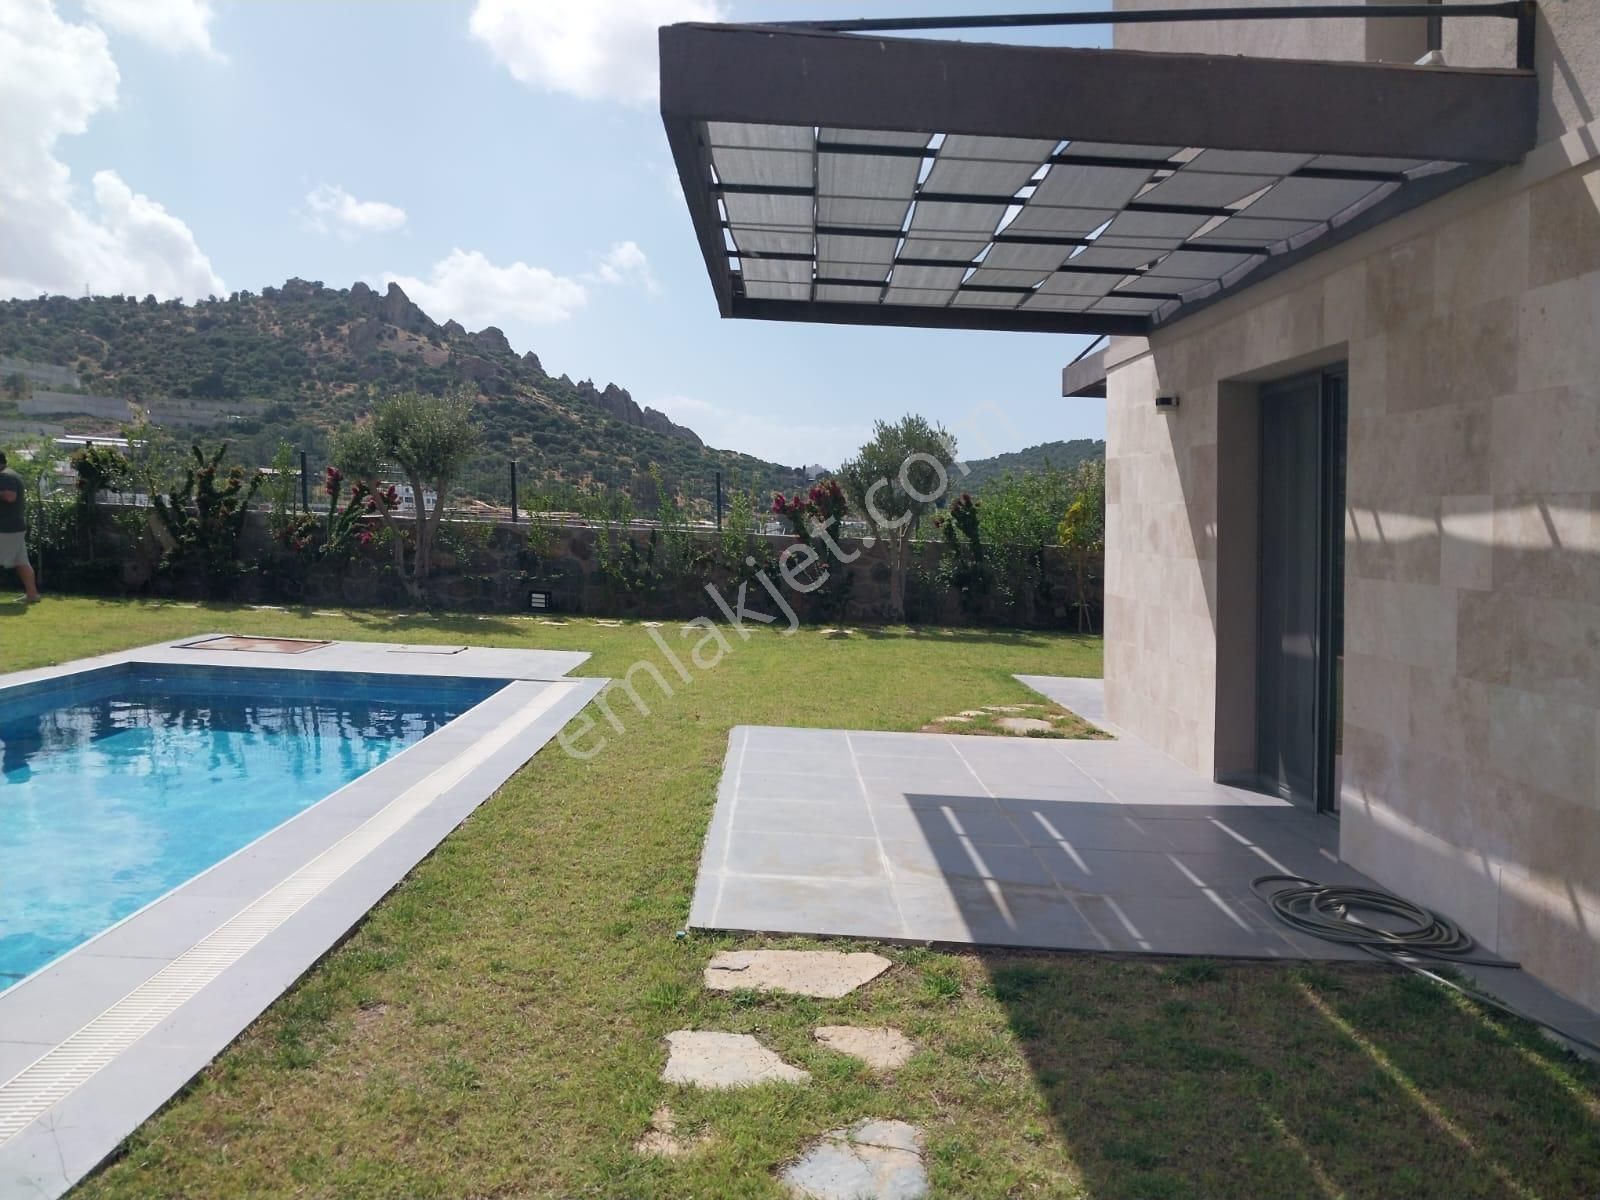 Bodrum Farilya Satılık Villa  BODRUM GÜNDOĞAN'DA SİTE İÇİNDE SATILIK ÖZEL HAVUZLU LÜKS VİLLA